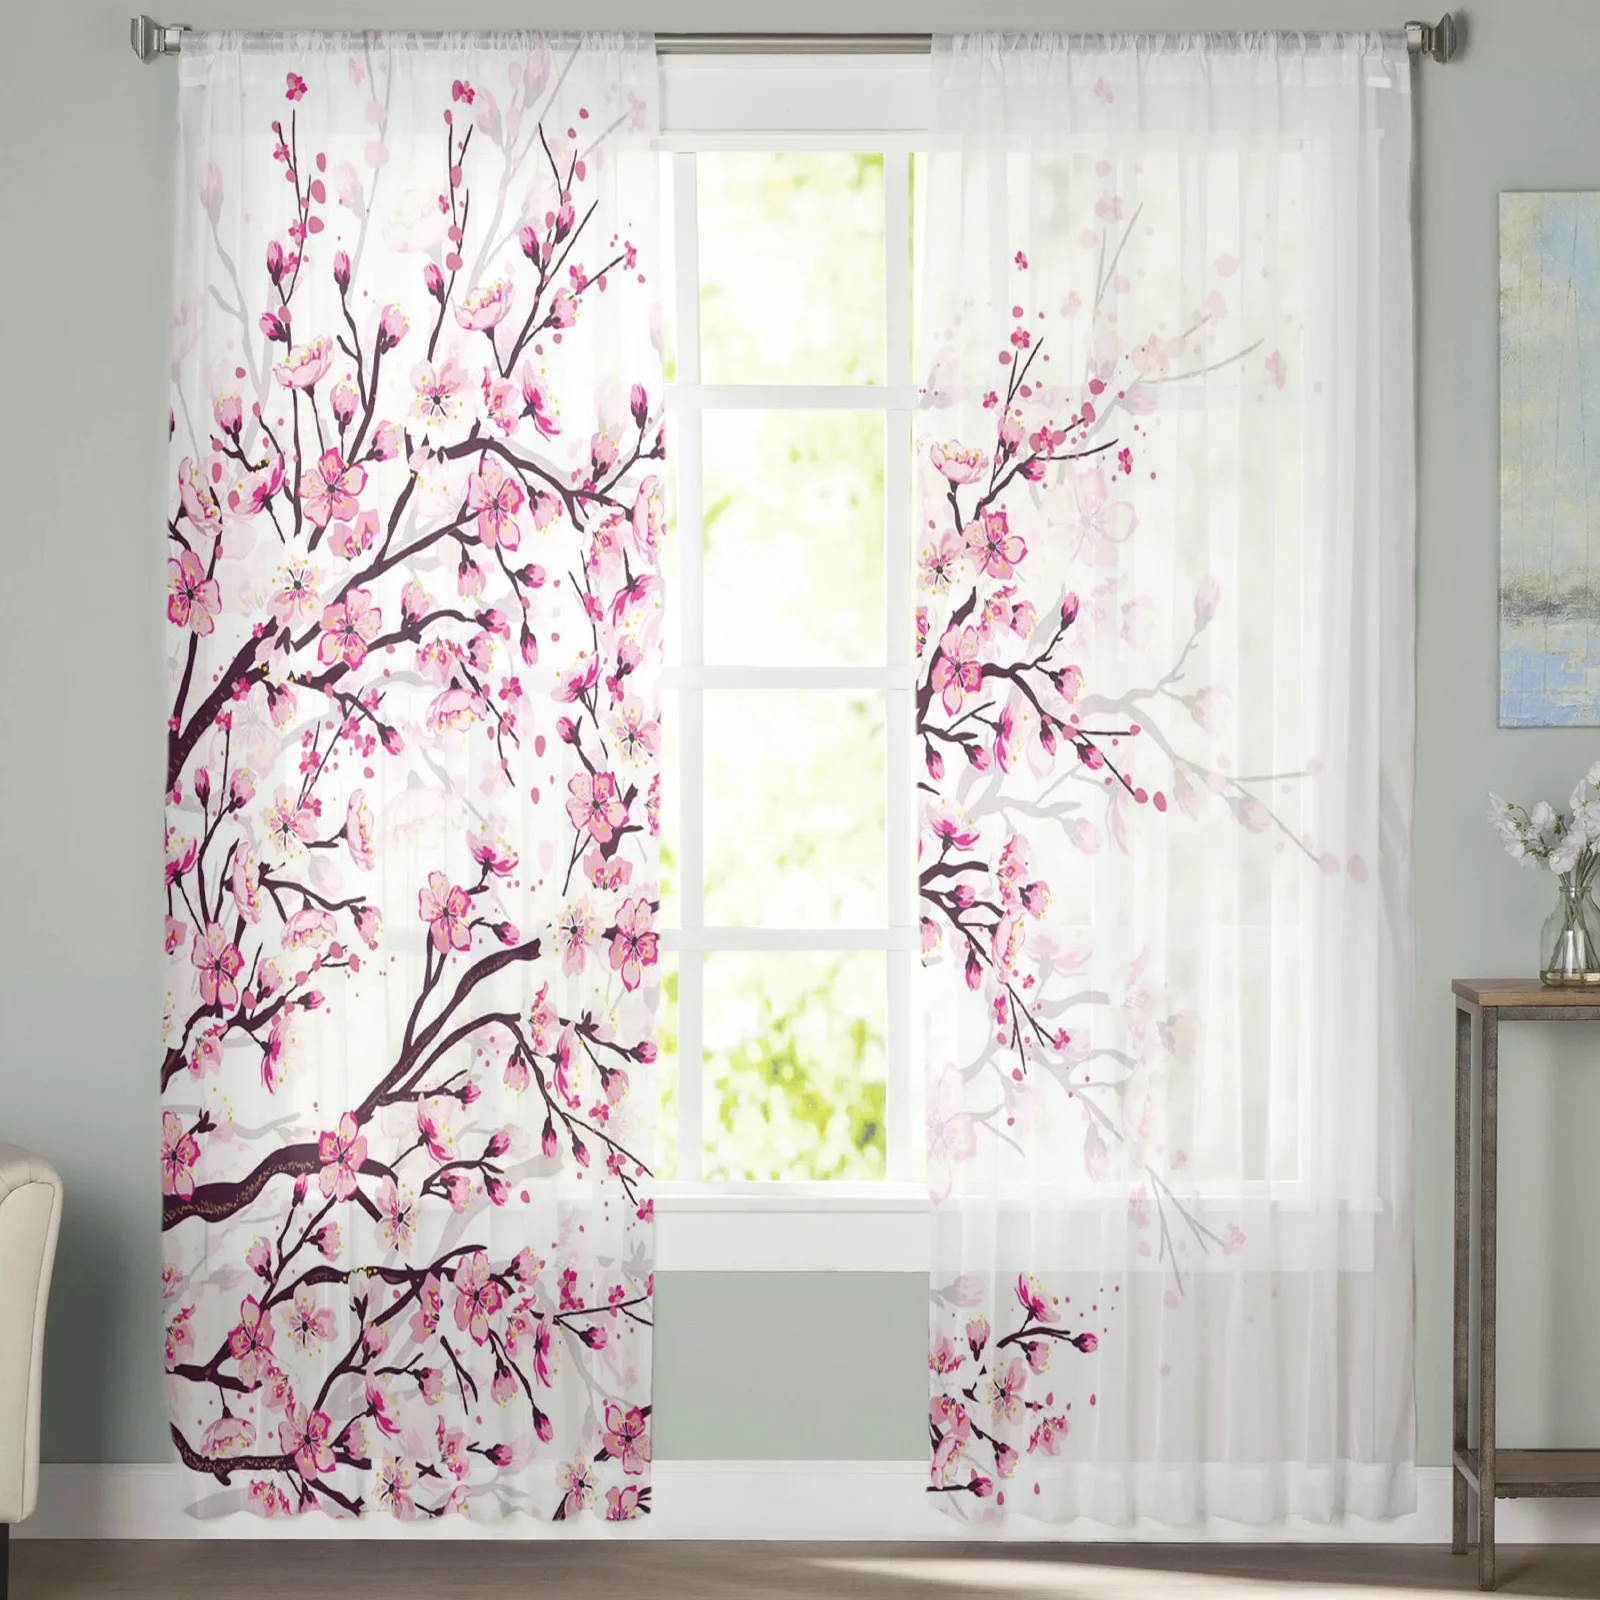 Японская вишня, ветки сливы, Розово-белый цветок, прозрачные занавески для гостиной, Тюлевые окна, Короткие занавески из вуалевой пряжи. 1